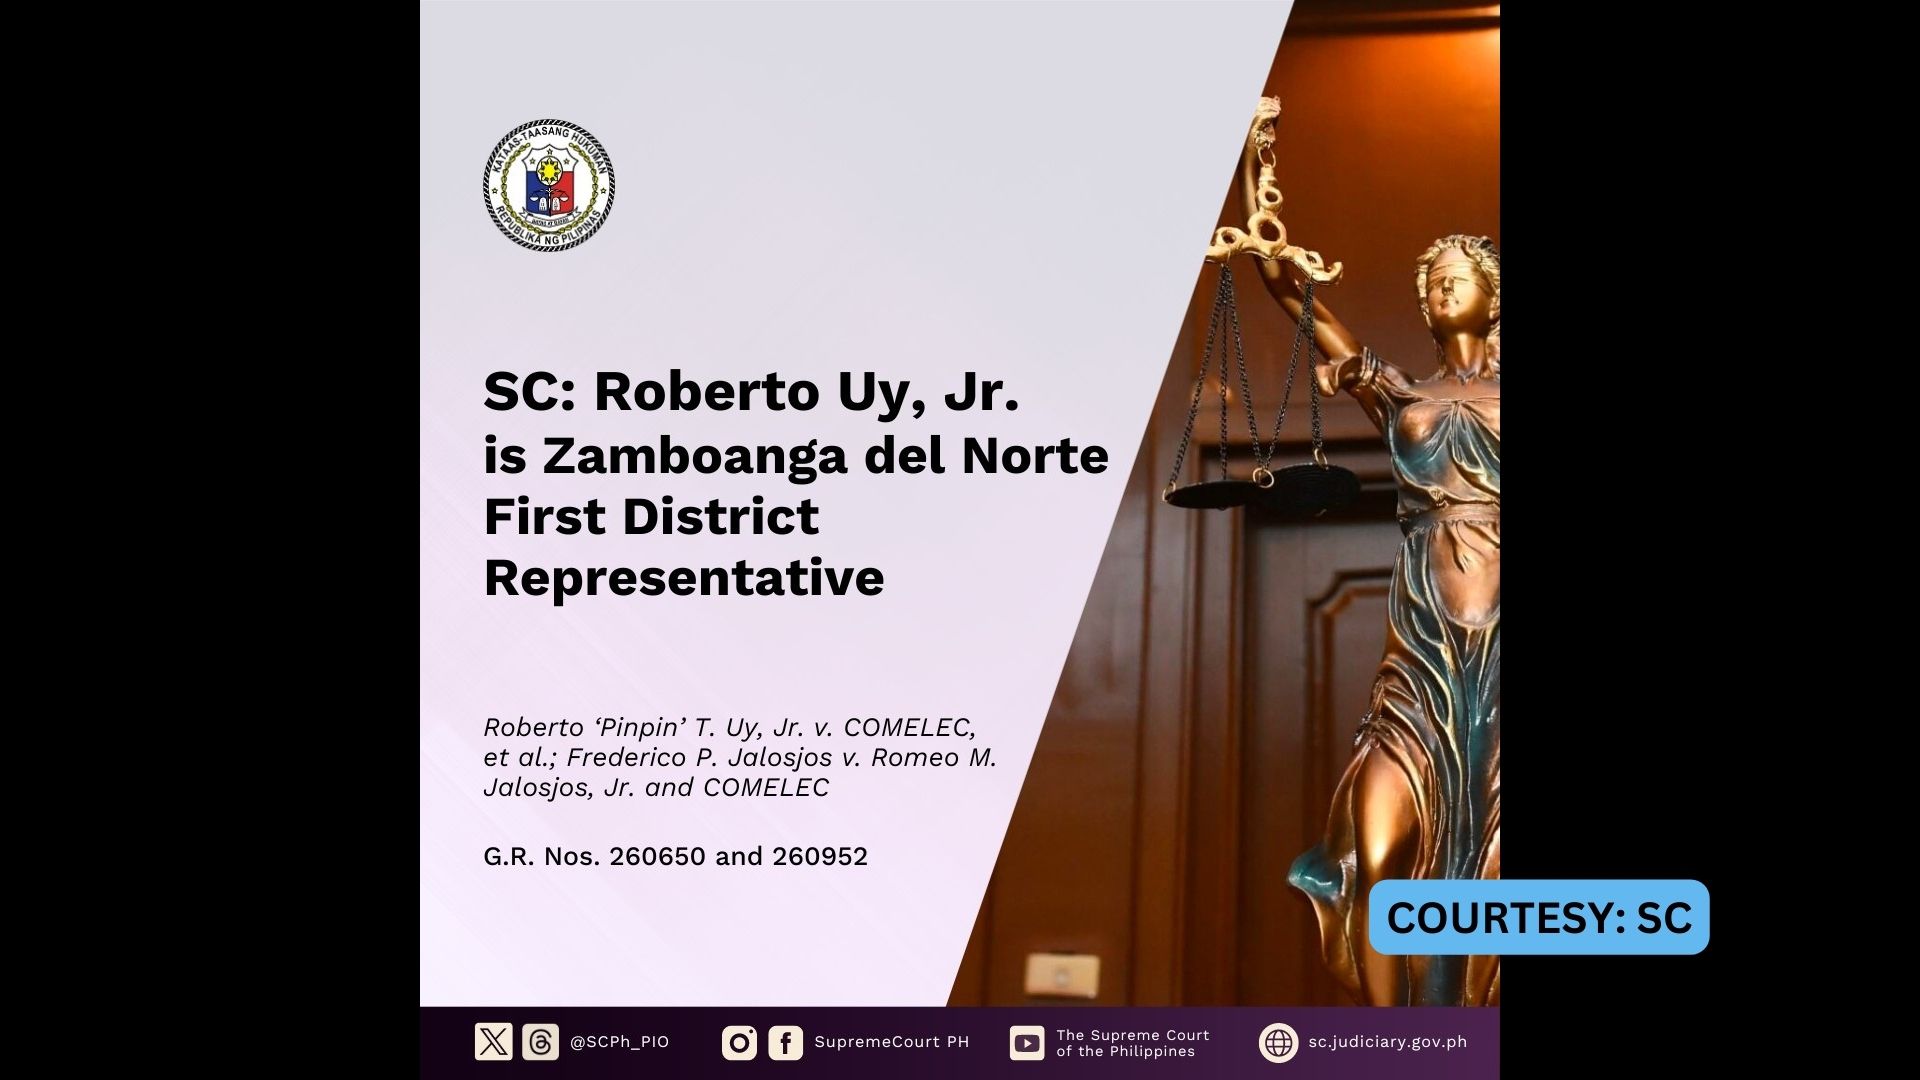 Proklamasyon ni Romeo Jalosjos Jr. bilang kongresista ng 1st district ng Zamboanga del Norte, pinawalang bisa ng SC